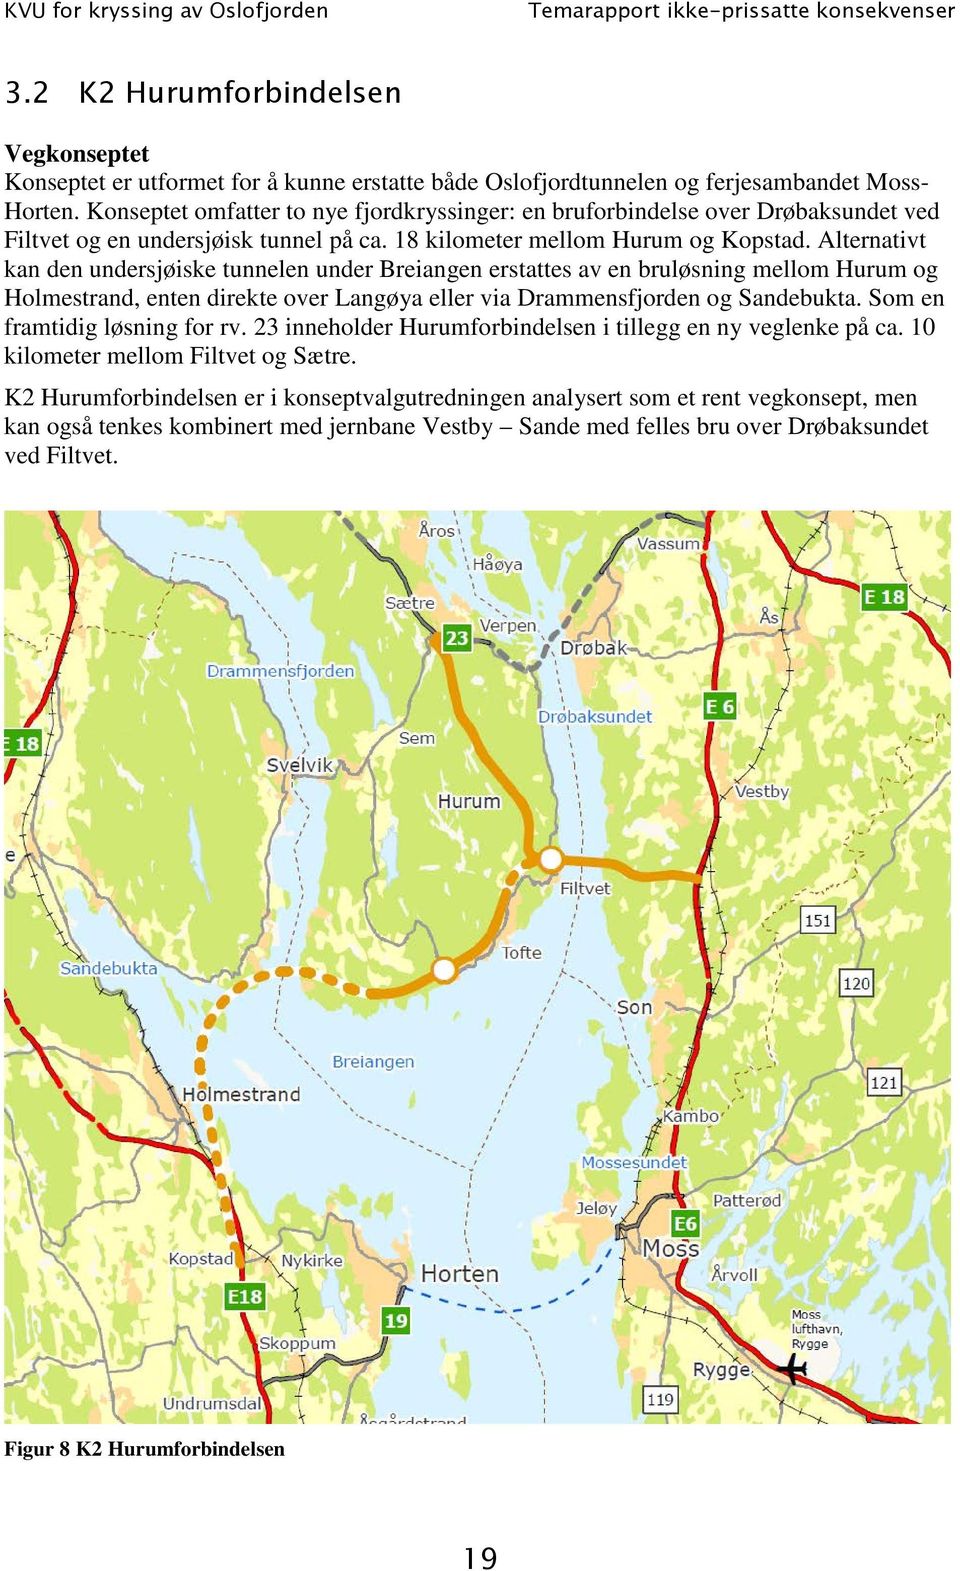 Alternativt kan den undersjøiske tunnelen under Breiangen erstattes av en bruløsning mellom Hurum og Holmestrand, enten direkte over Langøya eller via Drammensfjorden og Sandebukta.